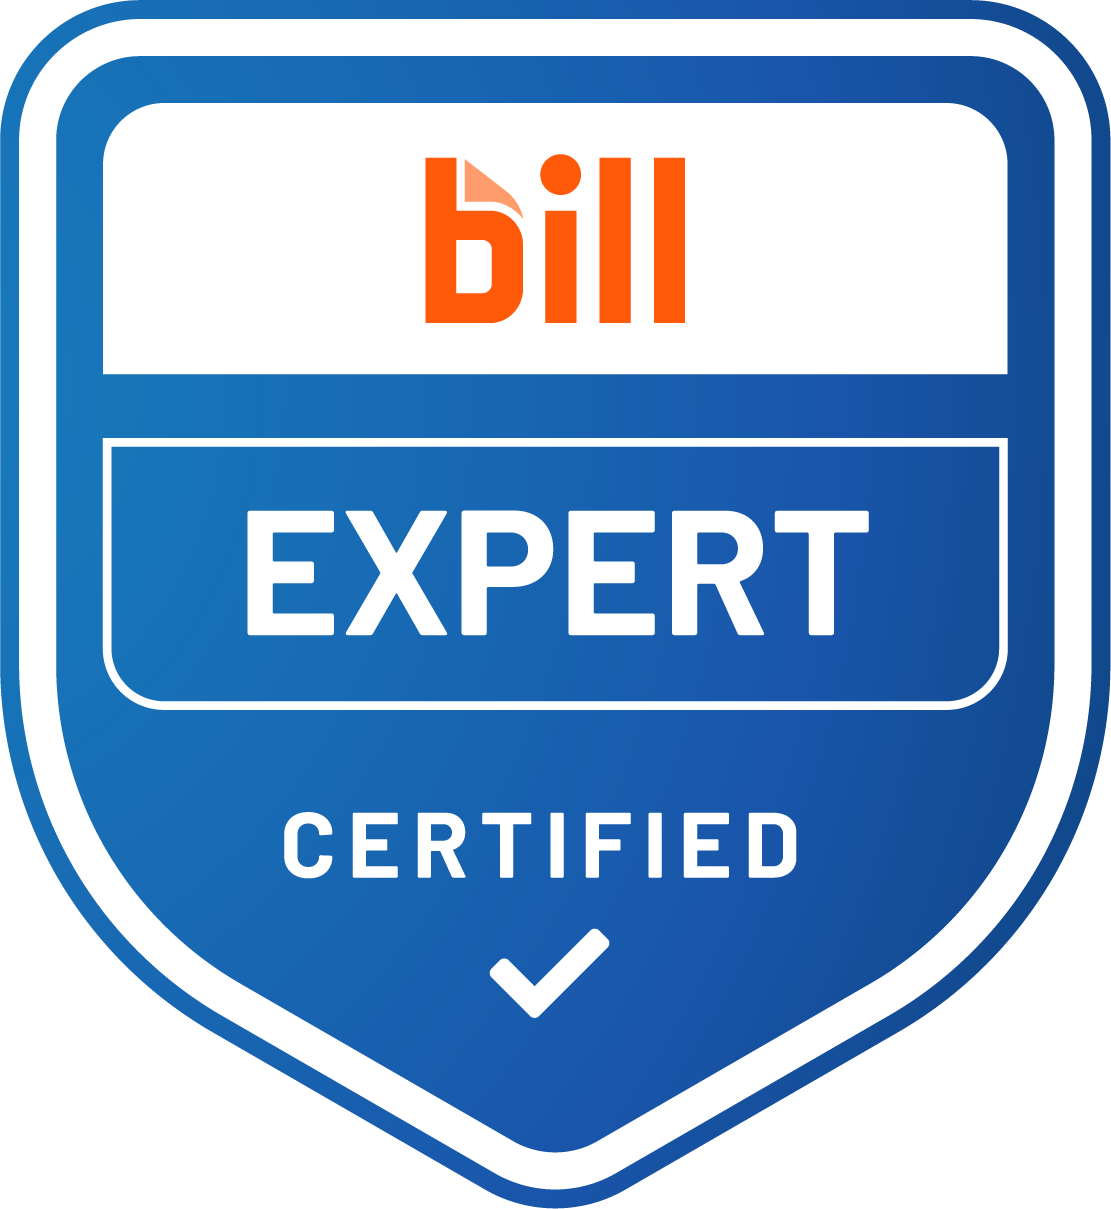 Bill.com Certified Expert CPAs Grand Rapids